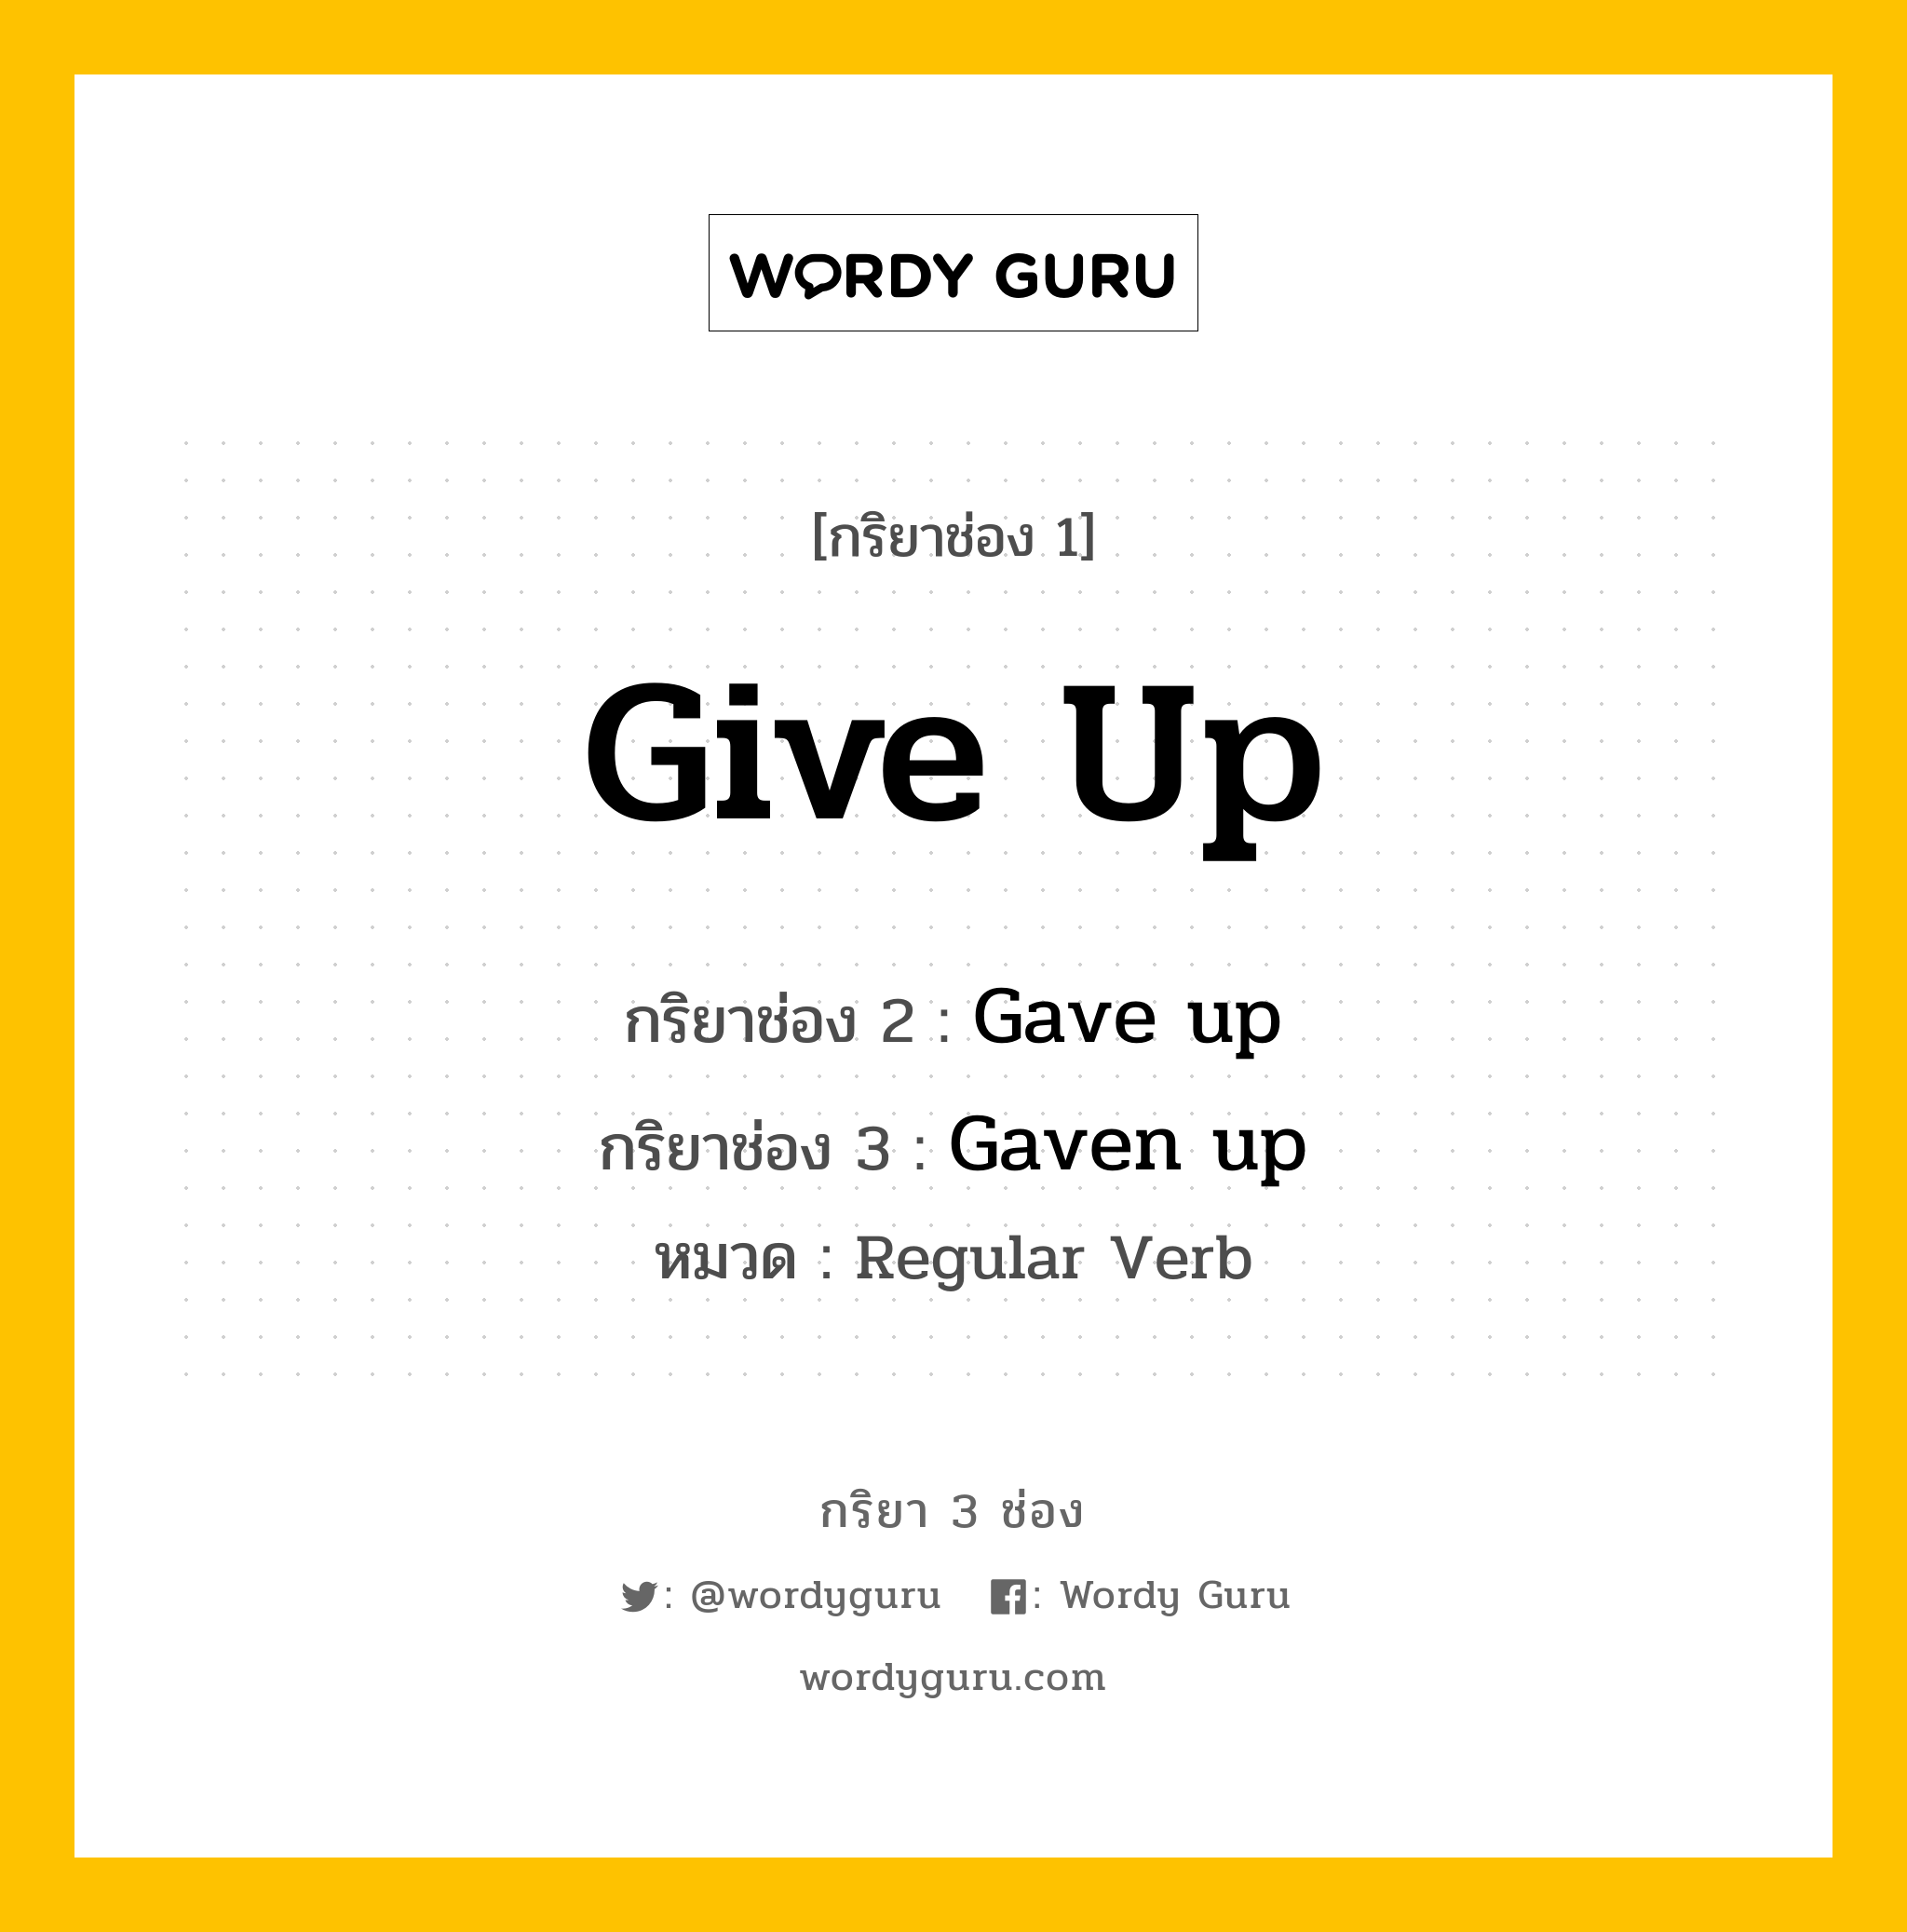 กริยา 3 ช่อง: Give up ช่อง 2 Give up ช่อง 3 คืออะไร, กริยาช่อง 1 Give up กริยาช่อง 2 Gave up กริยาช่อง 3 Gaven up หมวด Regular Verb หมวด Regular Verb